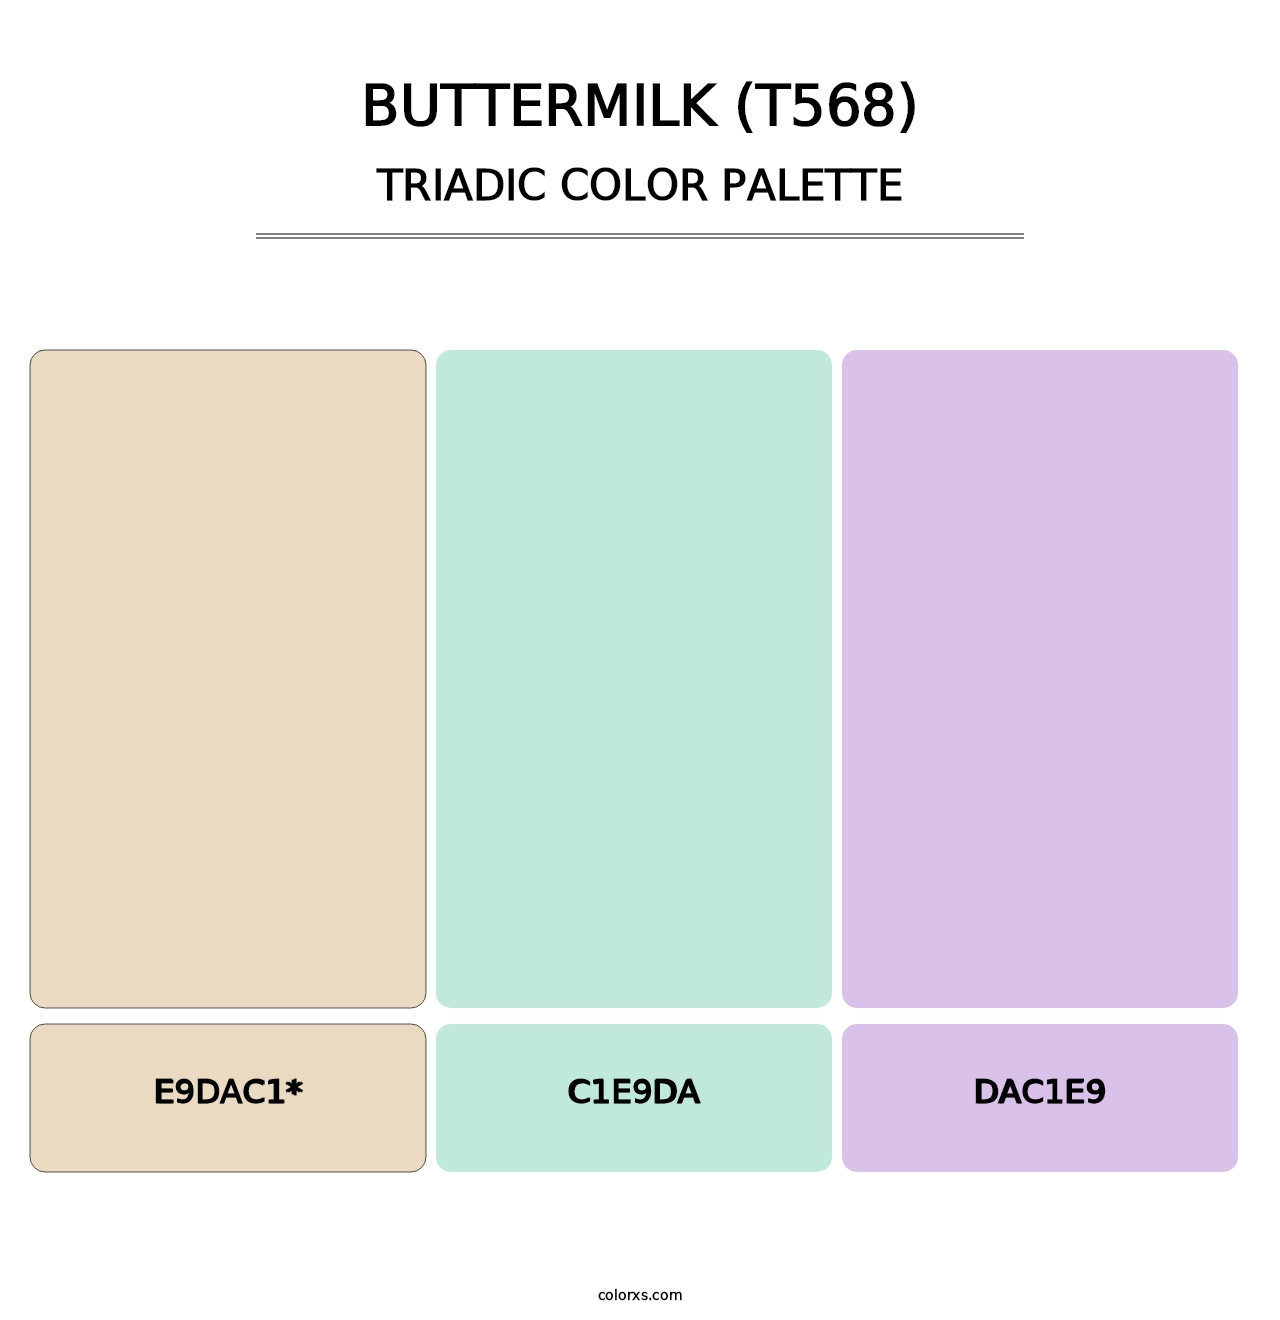 Buttermilk (T568) - Triadic Color Palette